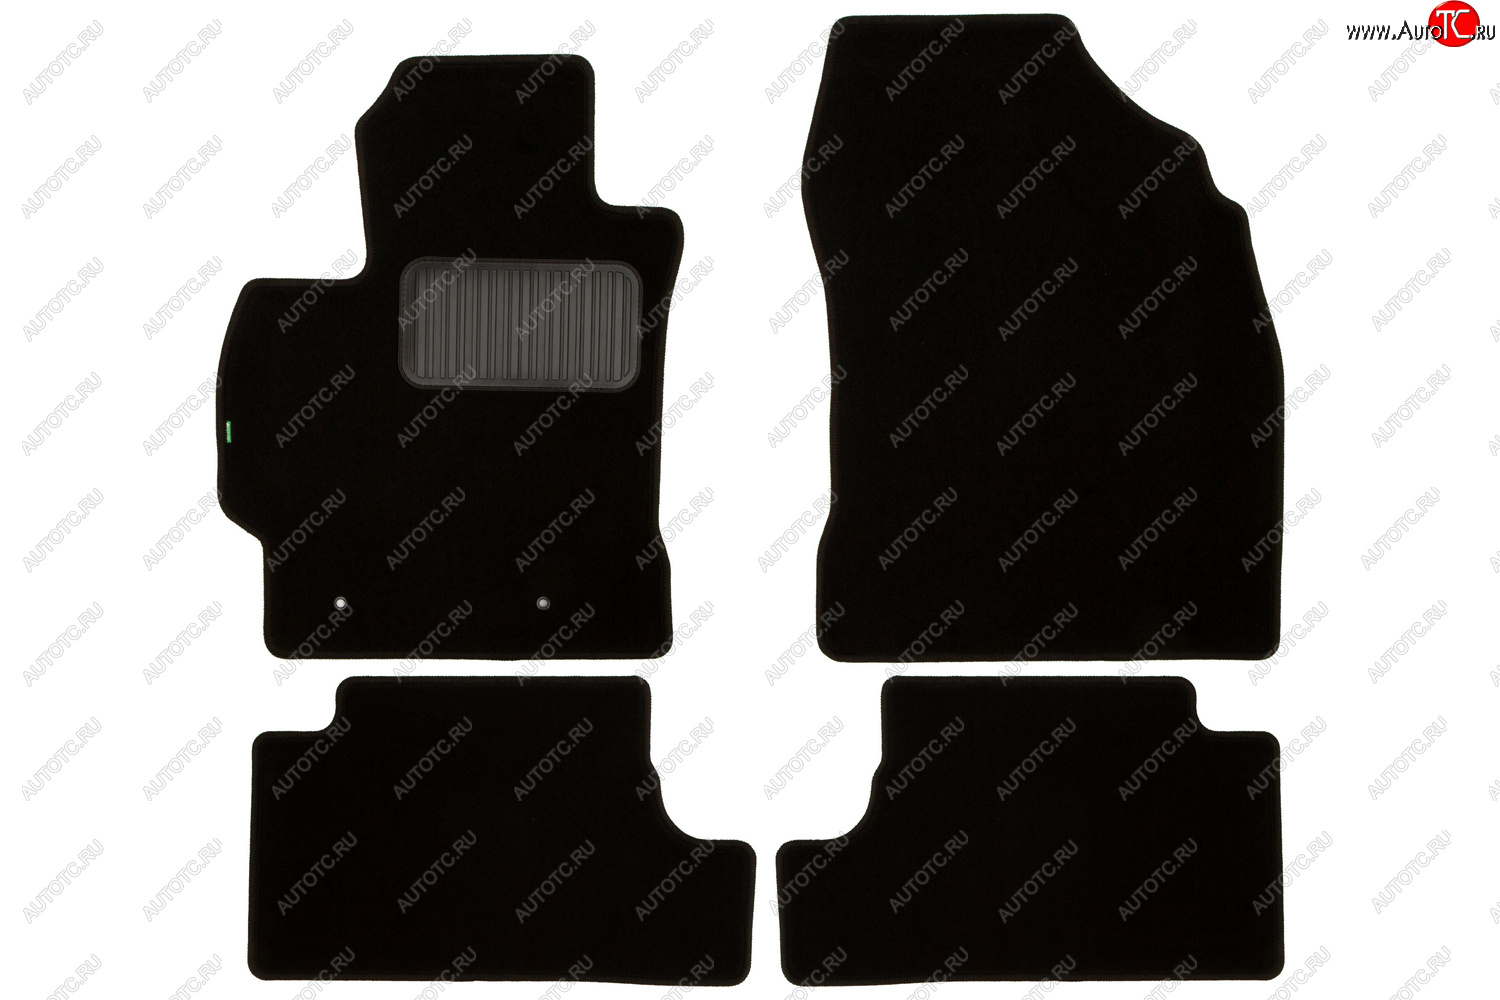 4 489 р. Комплект ковриков в салон (чёрные, текстиль) Klever Standard Toyota Corolla E140 седан дорестайлинг (2007-2010)